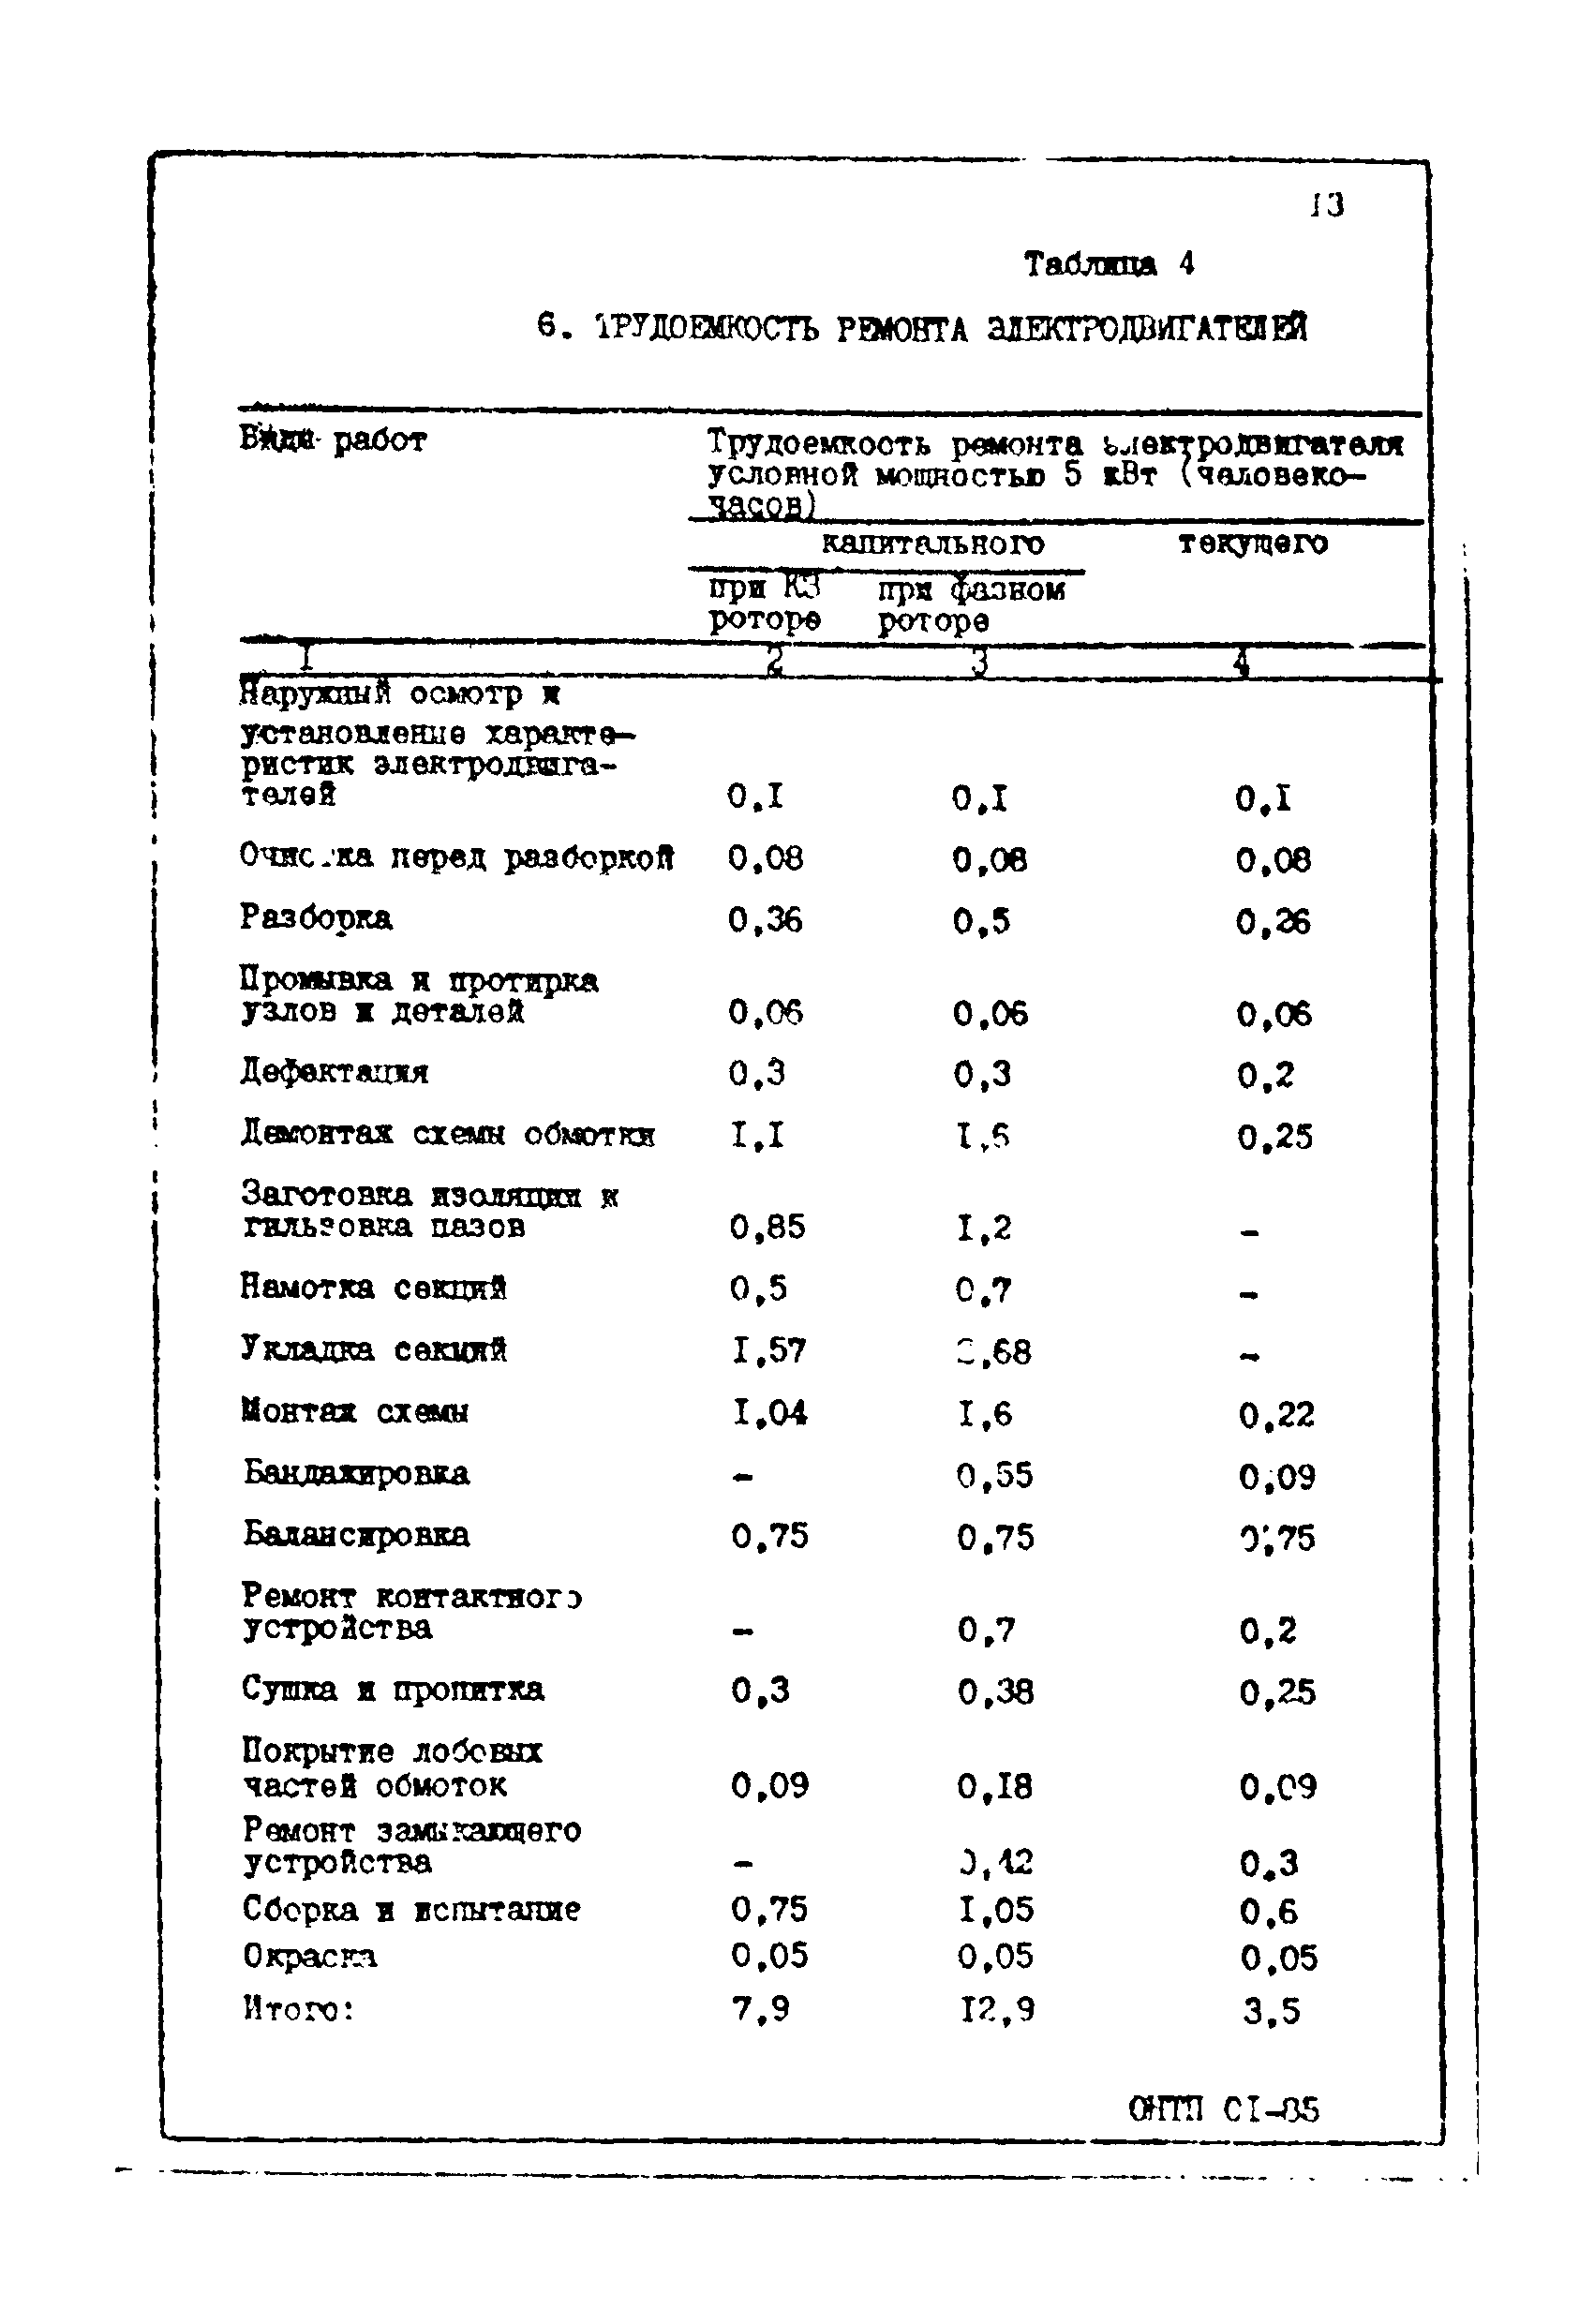 ОНТП 01-85/Минэлектротехпром